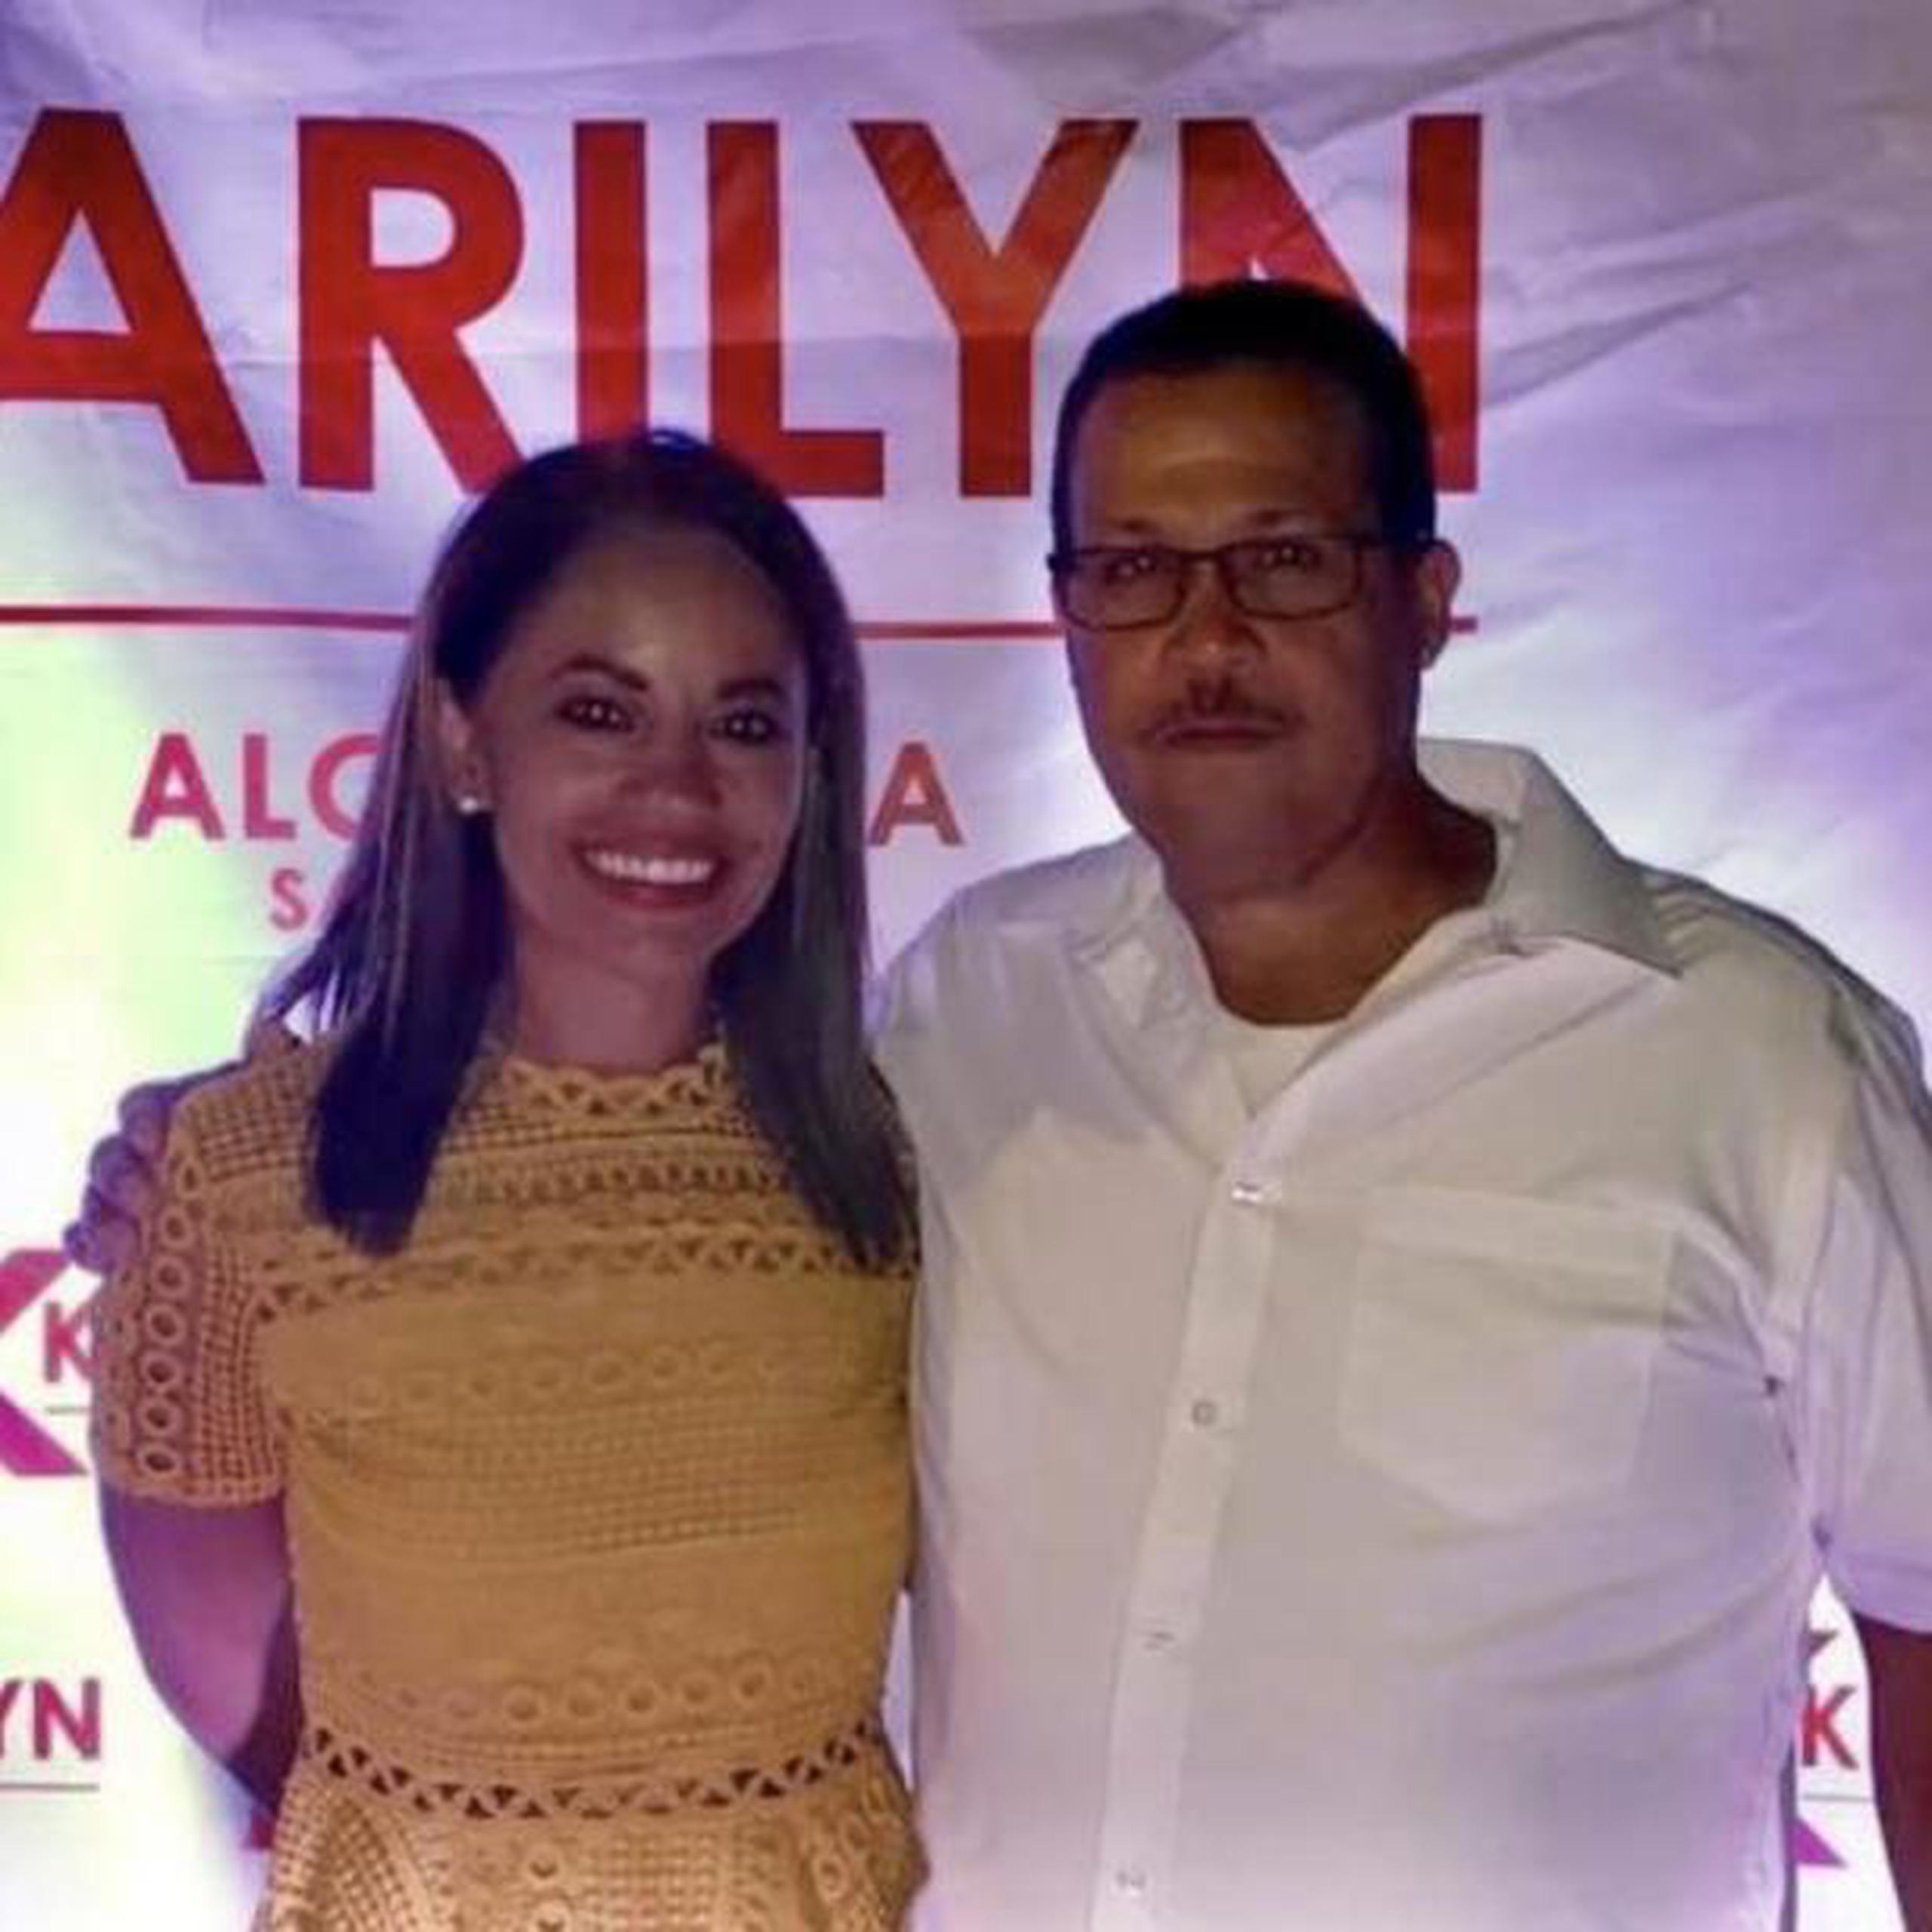 La alcaldesa Karilyn Bonilla junto al legislador municipal Carlos Colón Beltrán. (Suministrada)